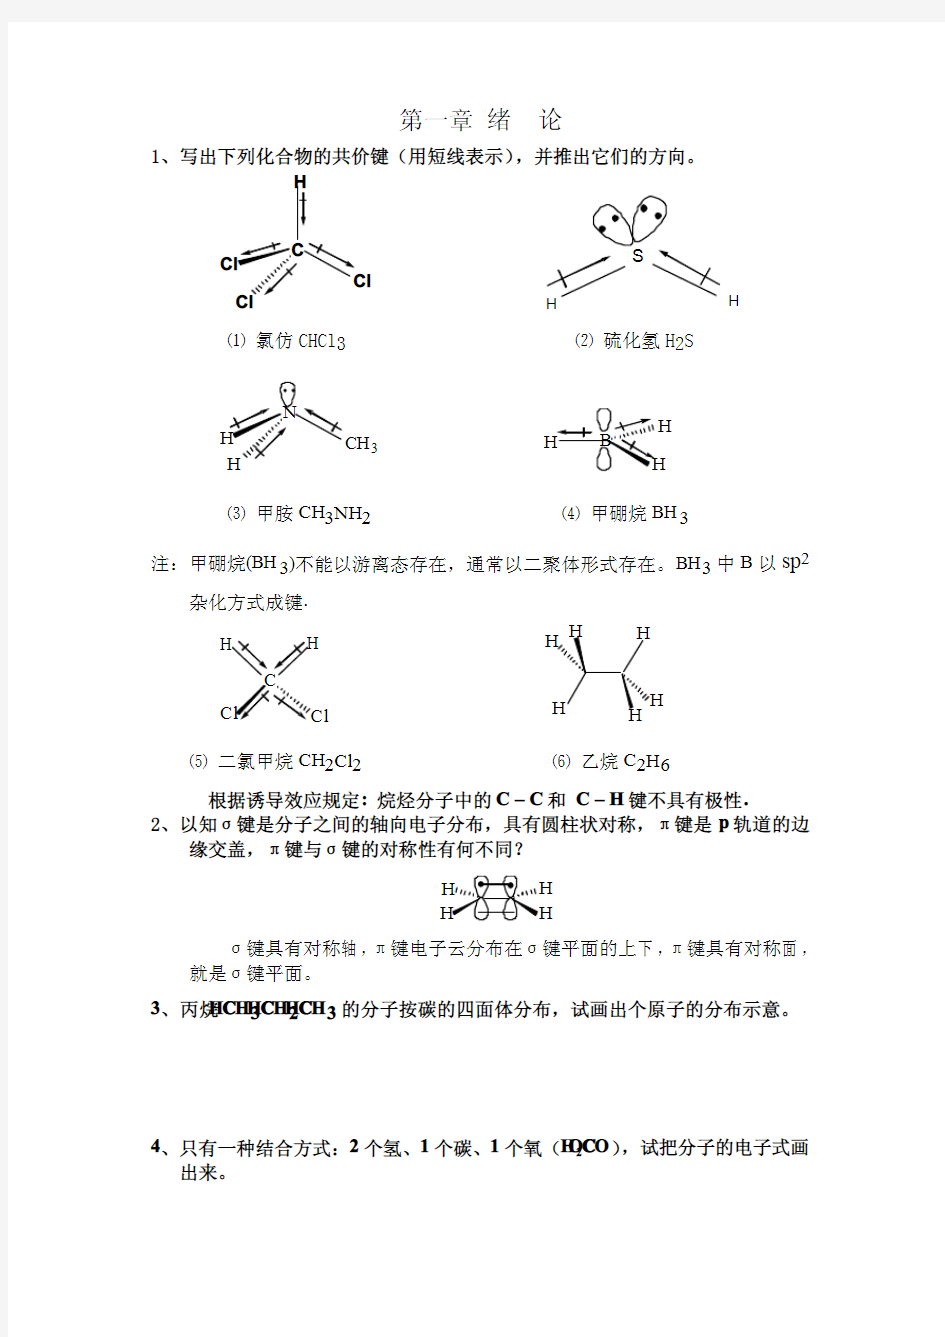 《有机化学》第三版 王积涛 课后习题答案 南开大学 无水印版本 